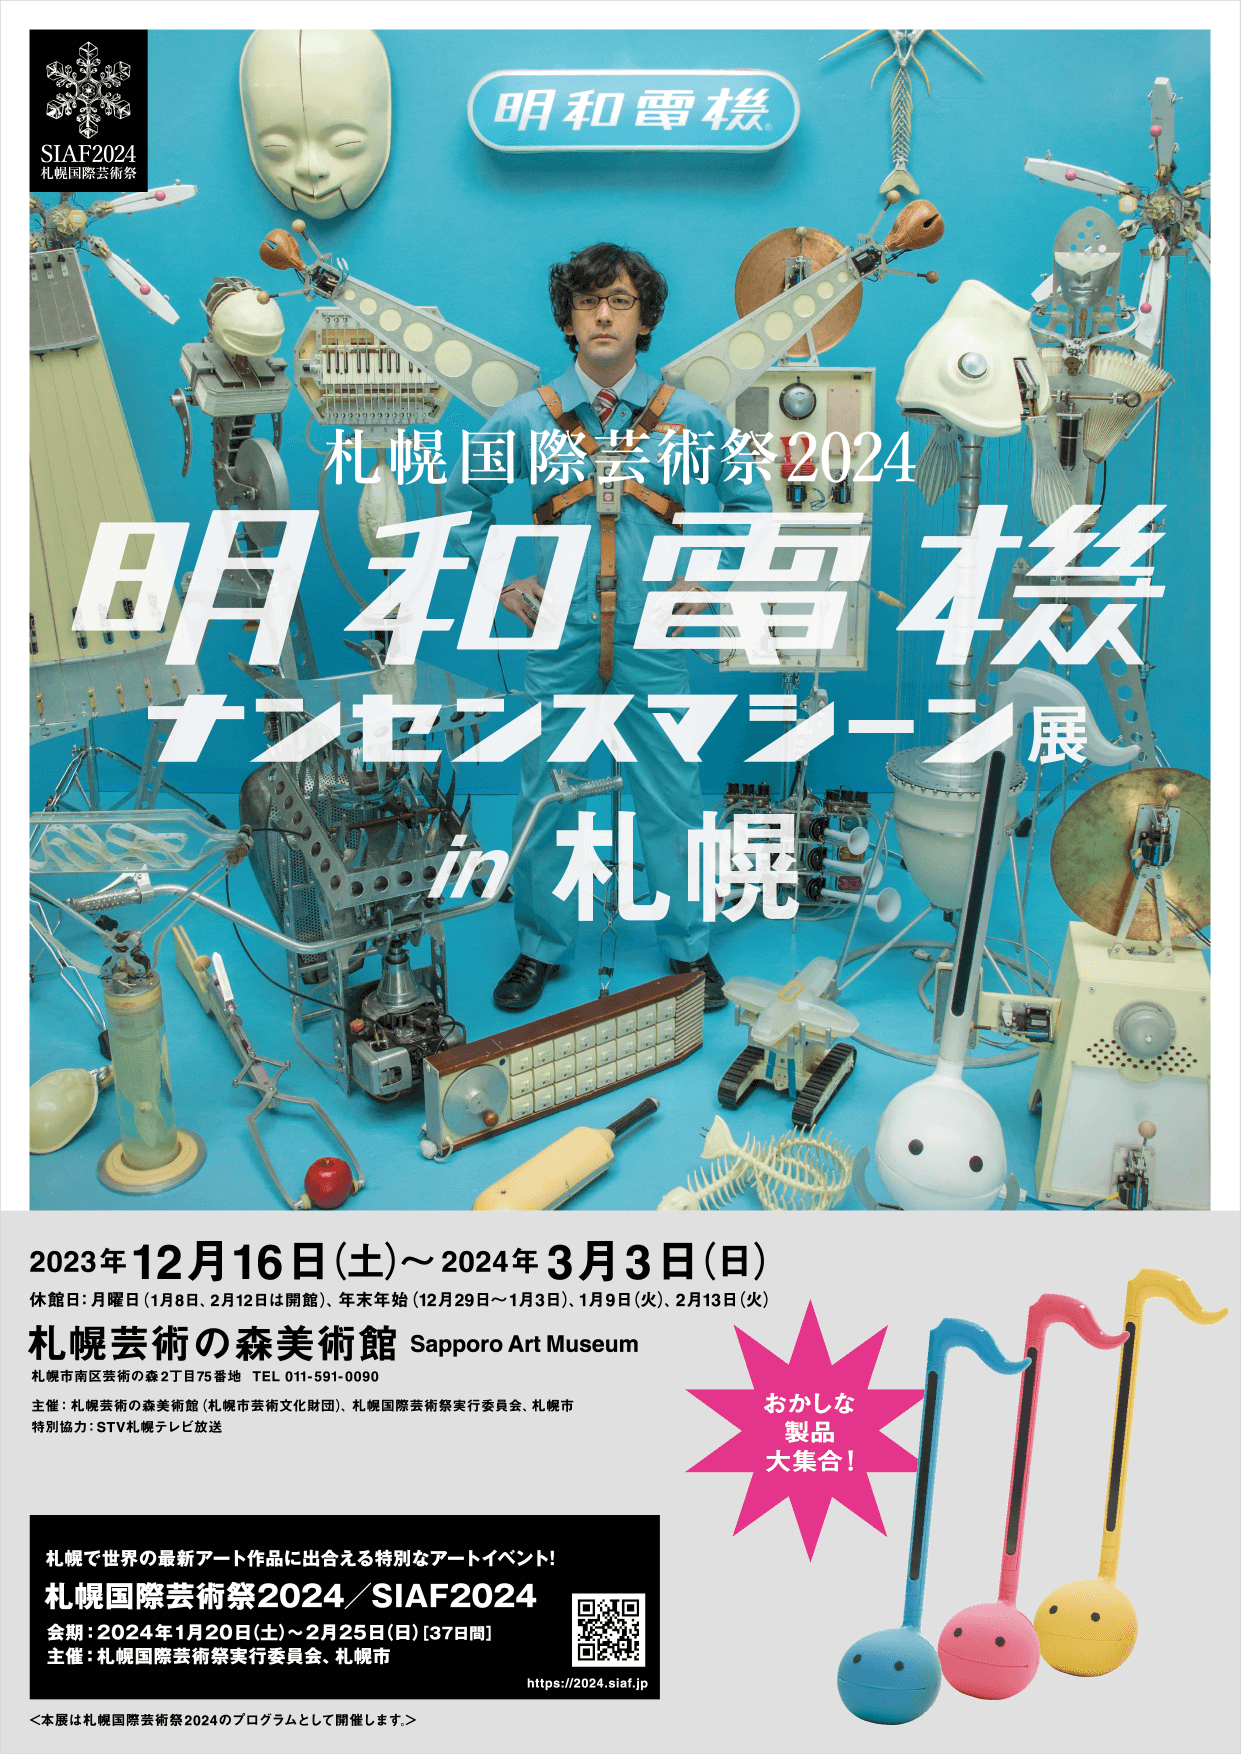 明和電機ナンセンスマシーン展in札幌